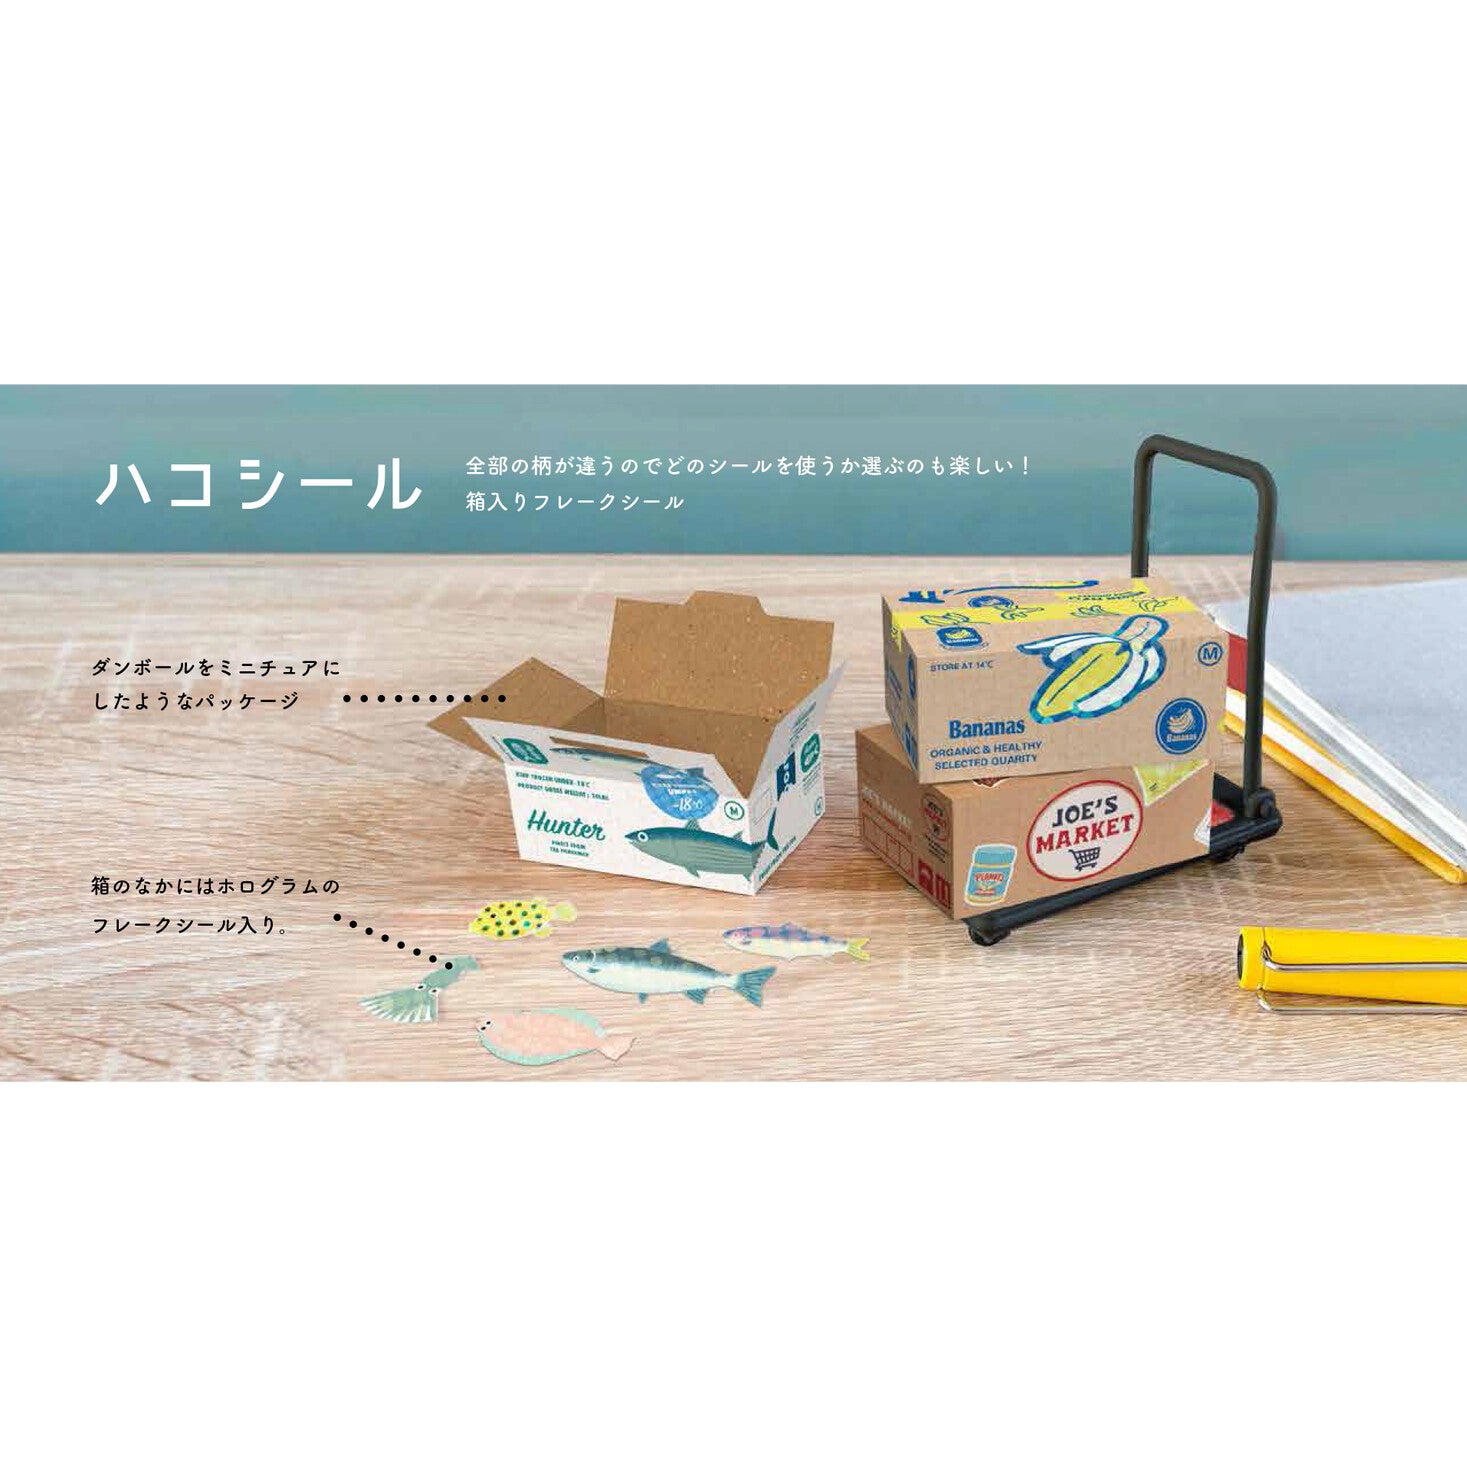 Miniature Shipping Box Flake Sticker Set - Bakery – Saiko Stationery